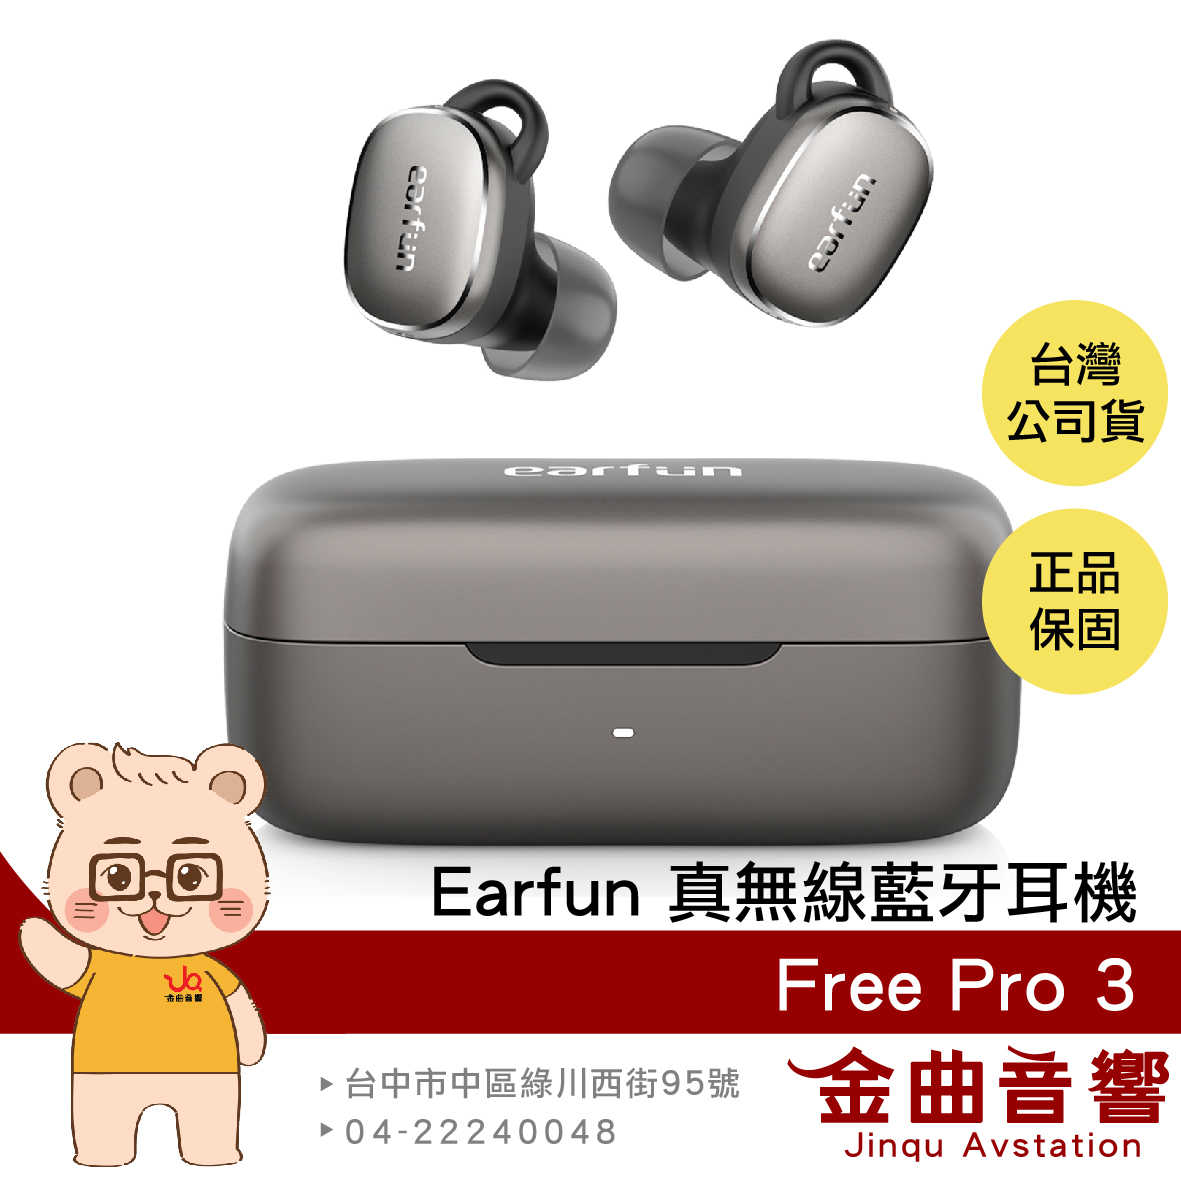 EarFun Free Pro 3 棕黑色 降噪 通透 7mm單體 IPX5 支援單耳 真無線 藍芽耳機 | 金曲音響